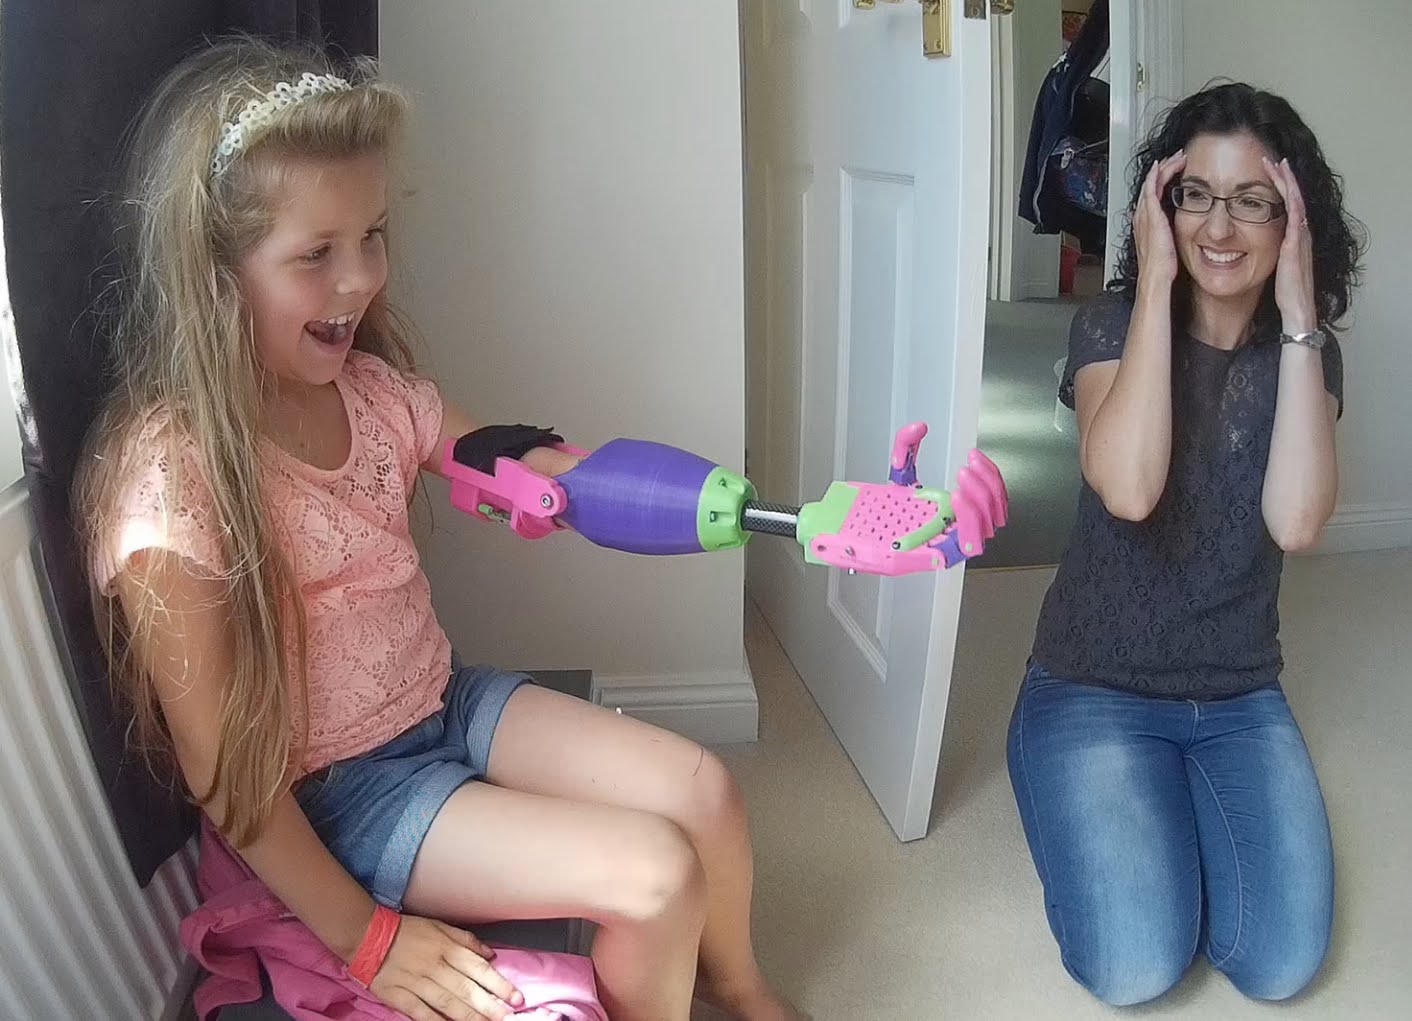 Menina recebe braço artificial feito por impressora 3D